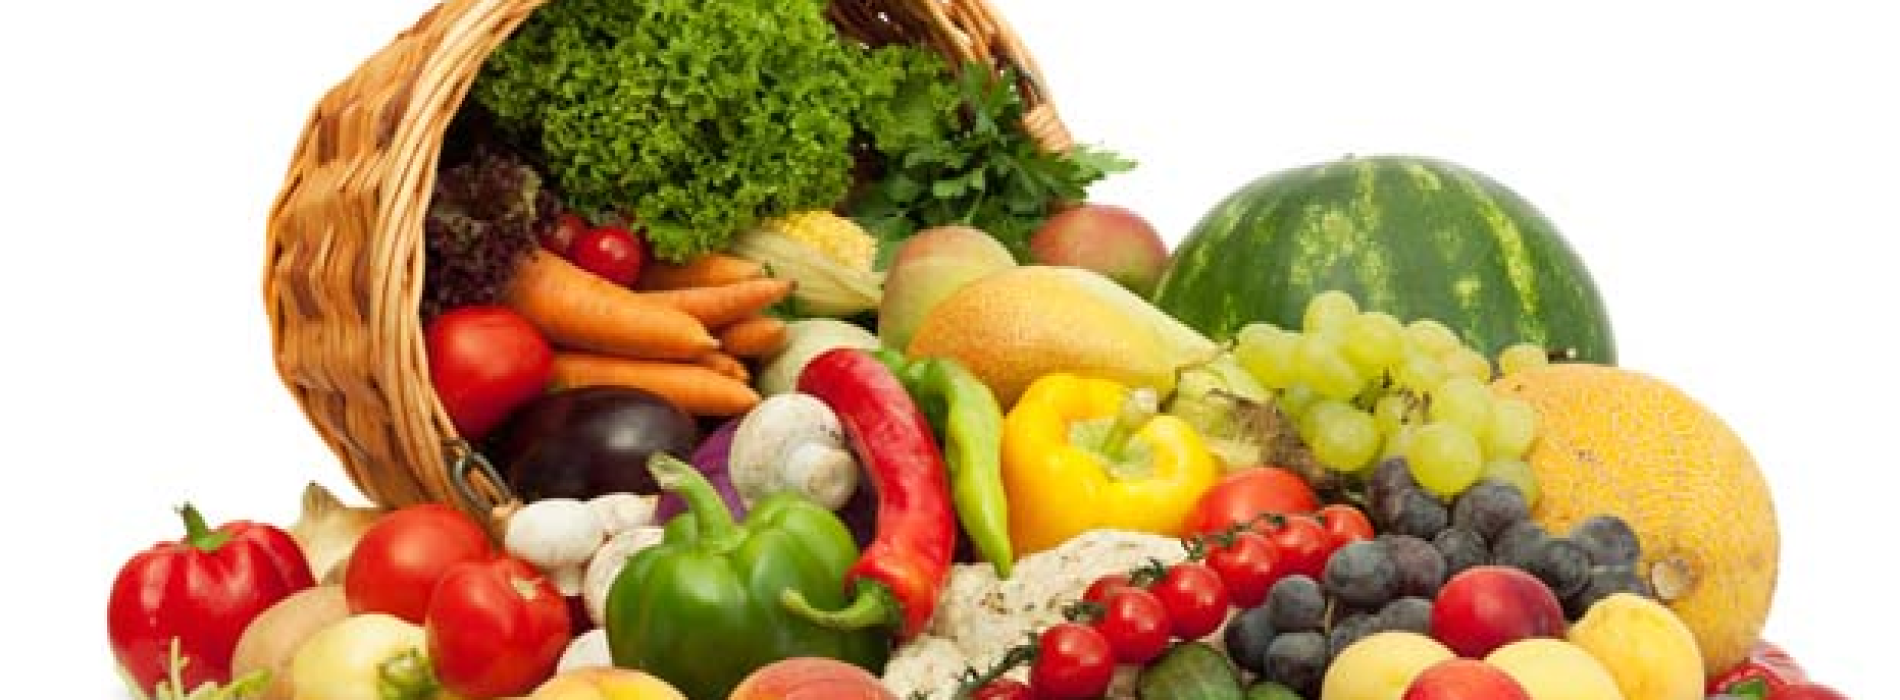 Consulta Agricoltura: “Frutta e verdura contro il caldo”